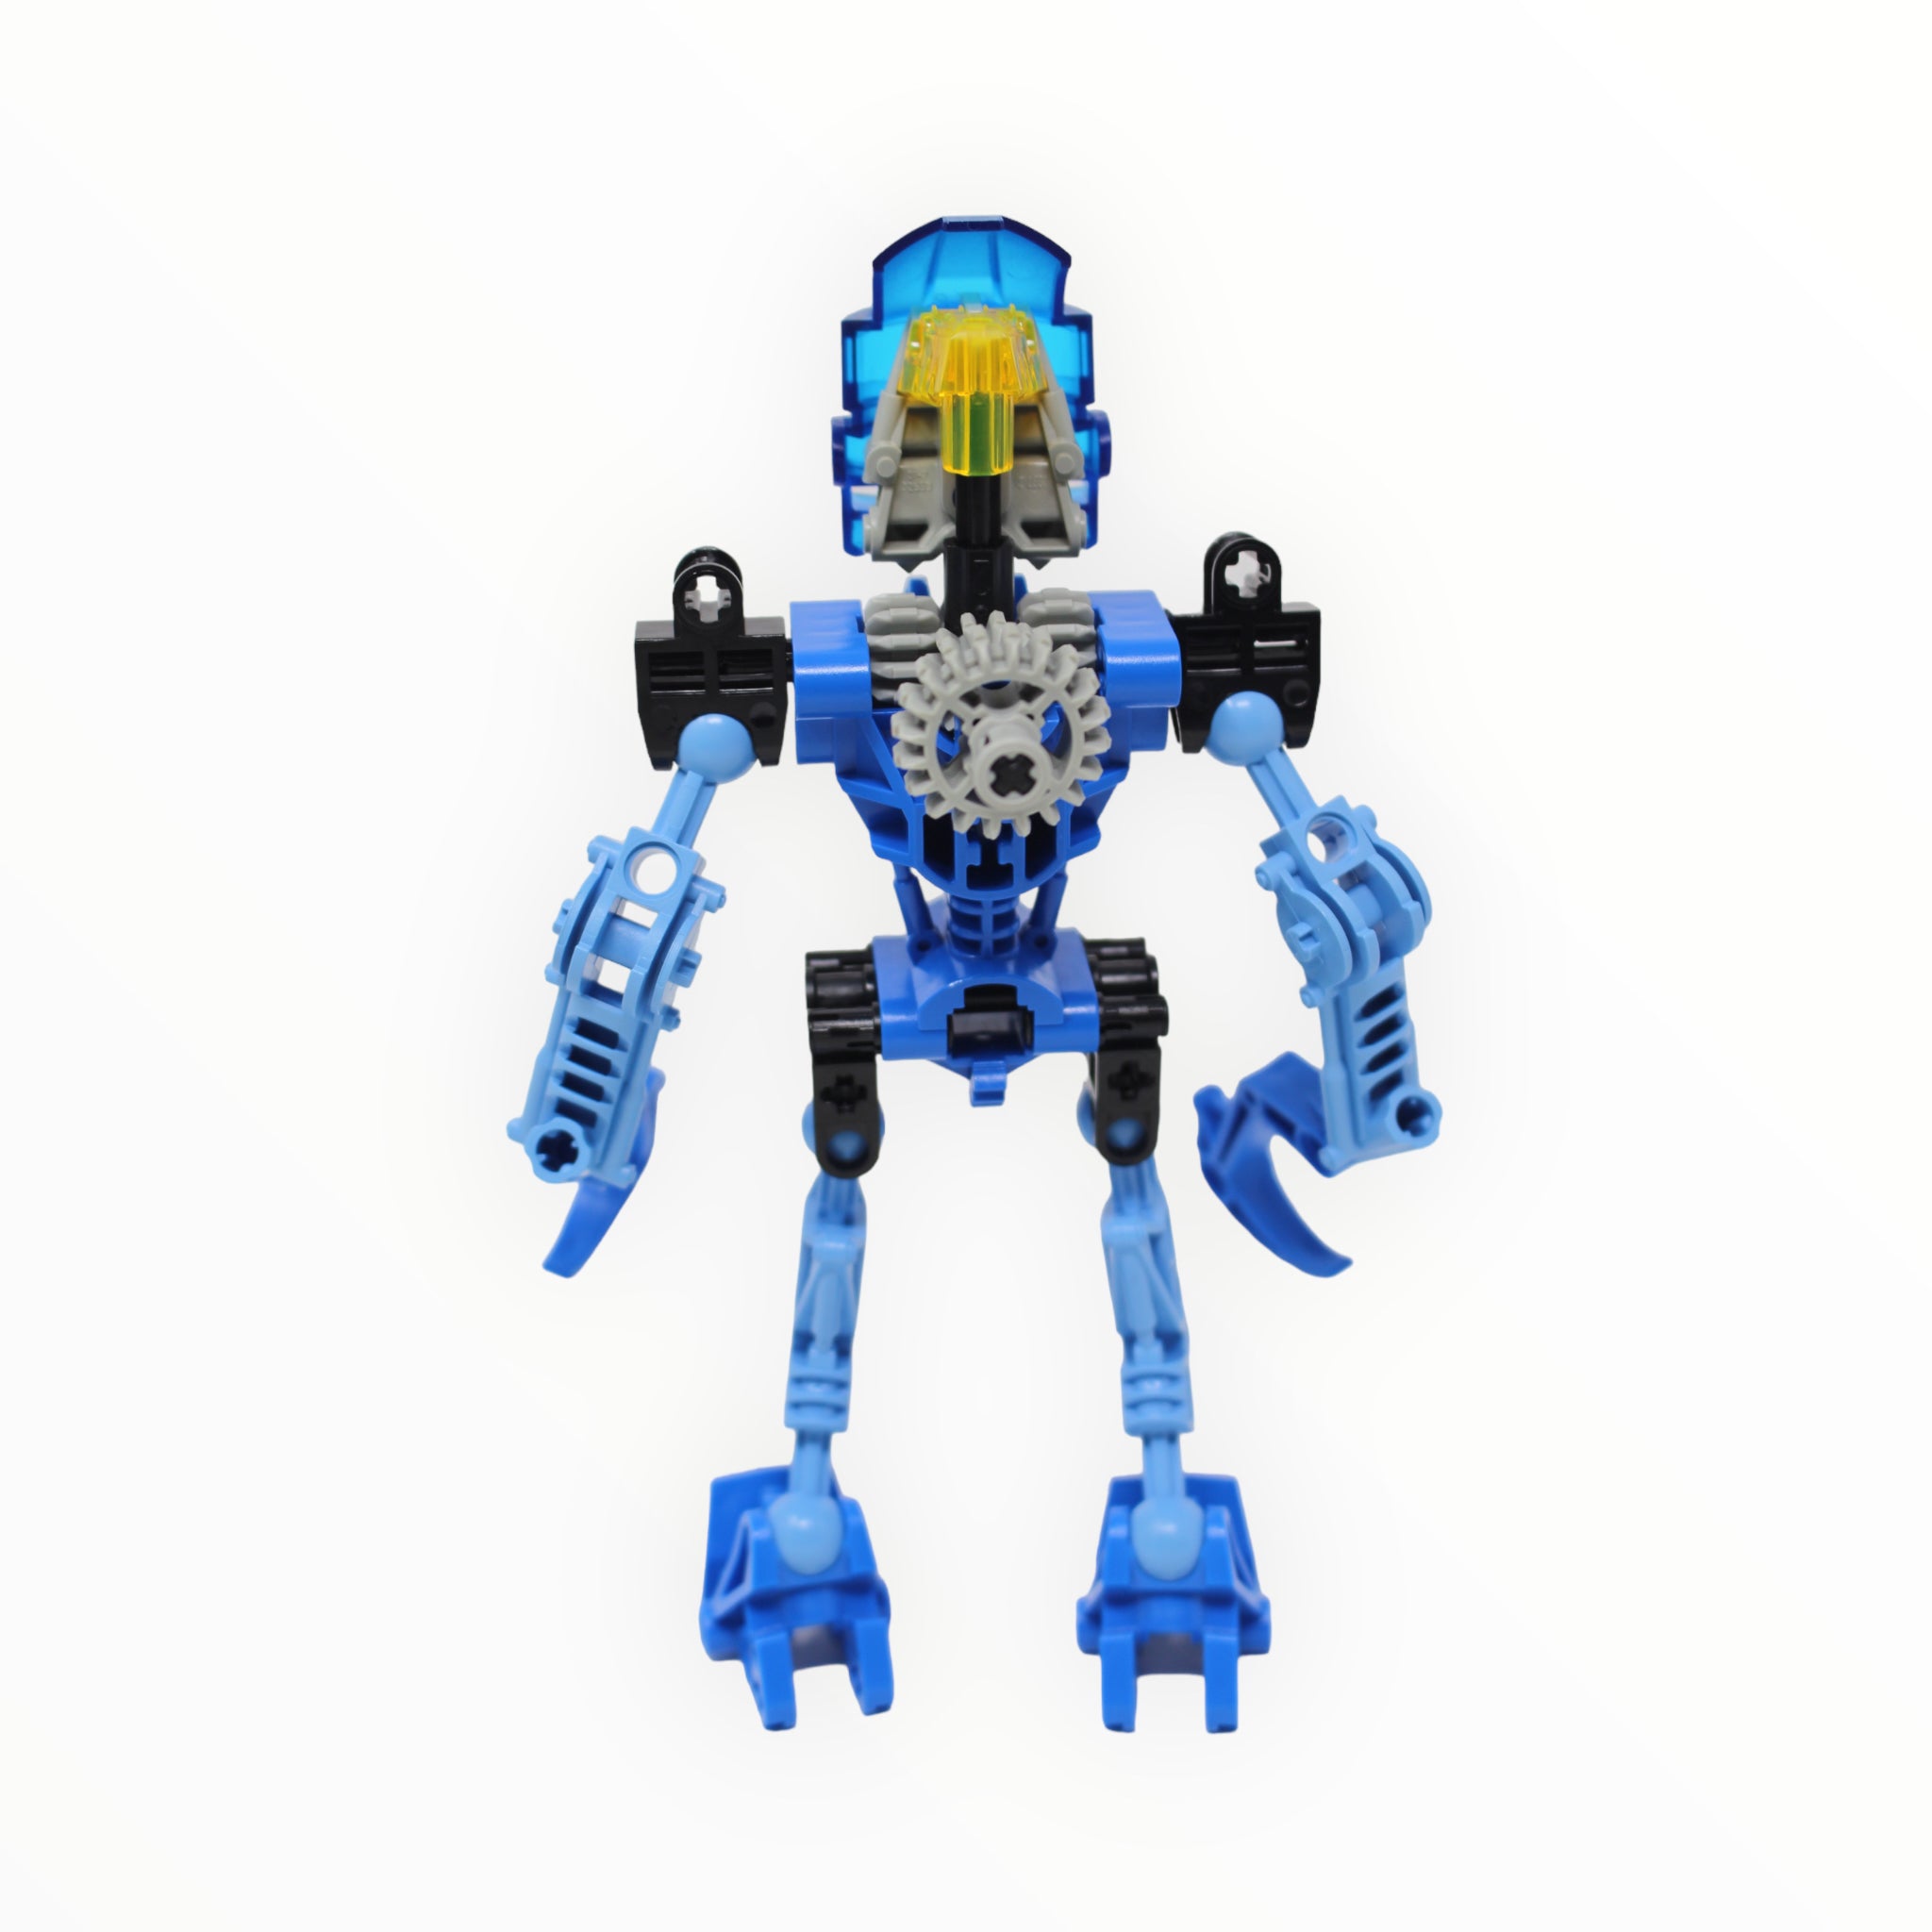 bionicle berix